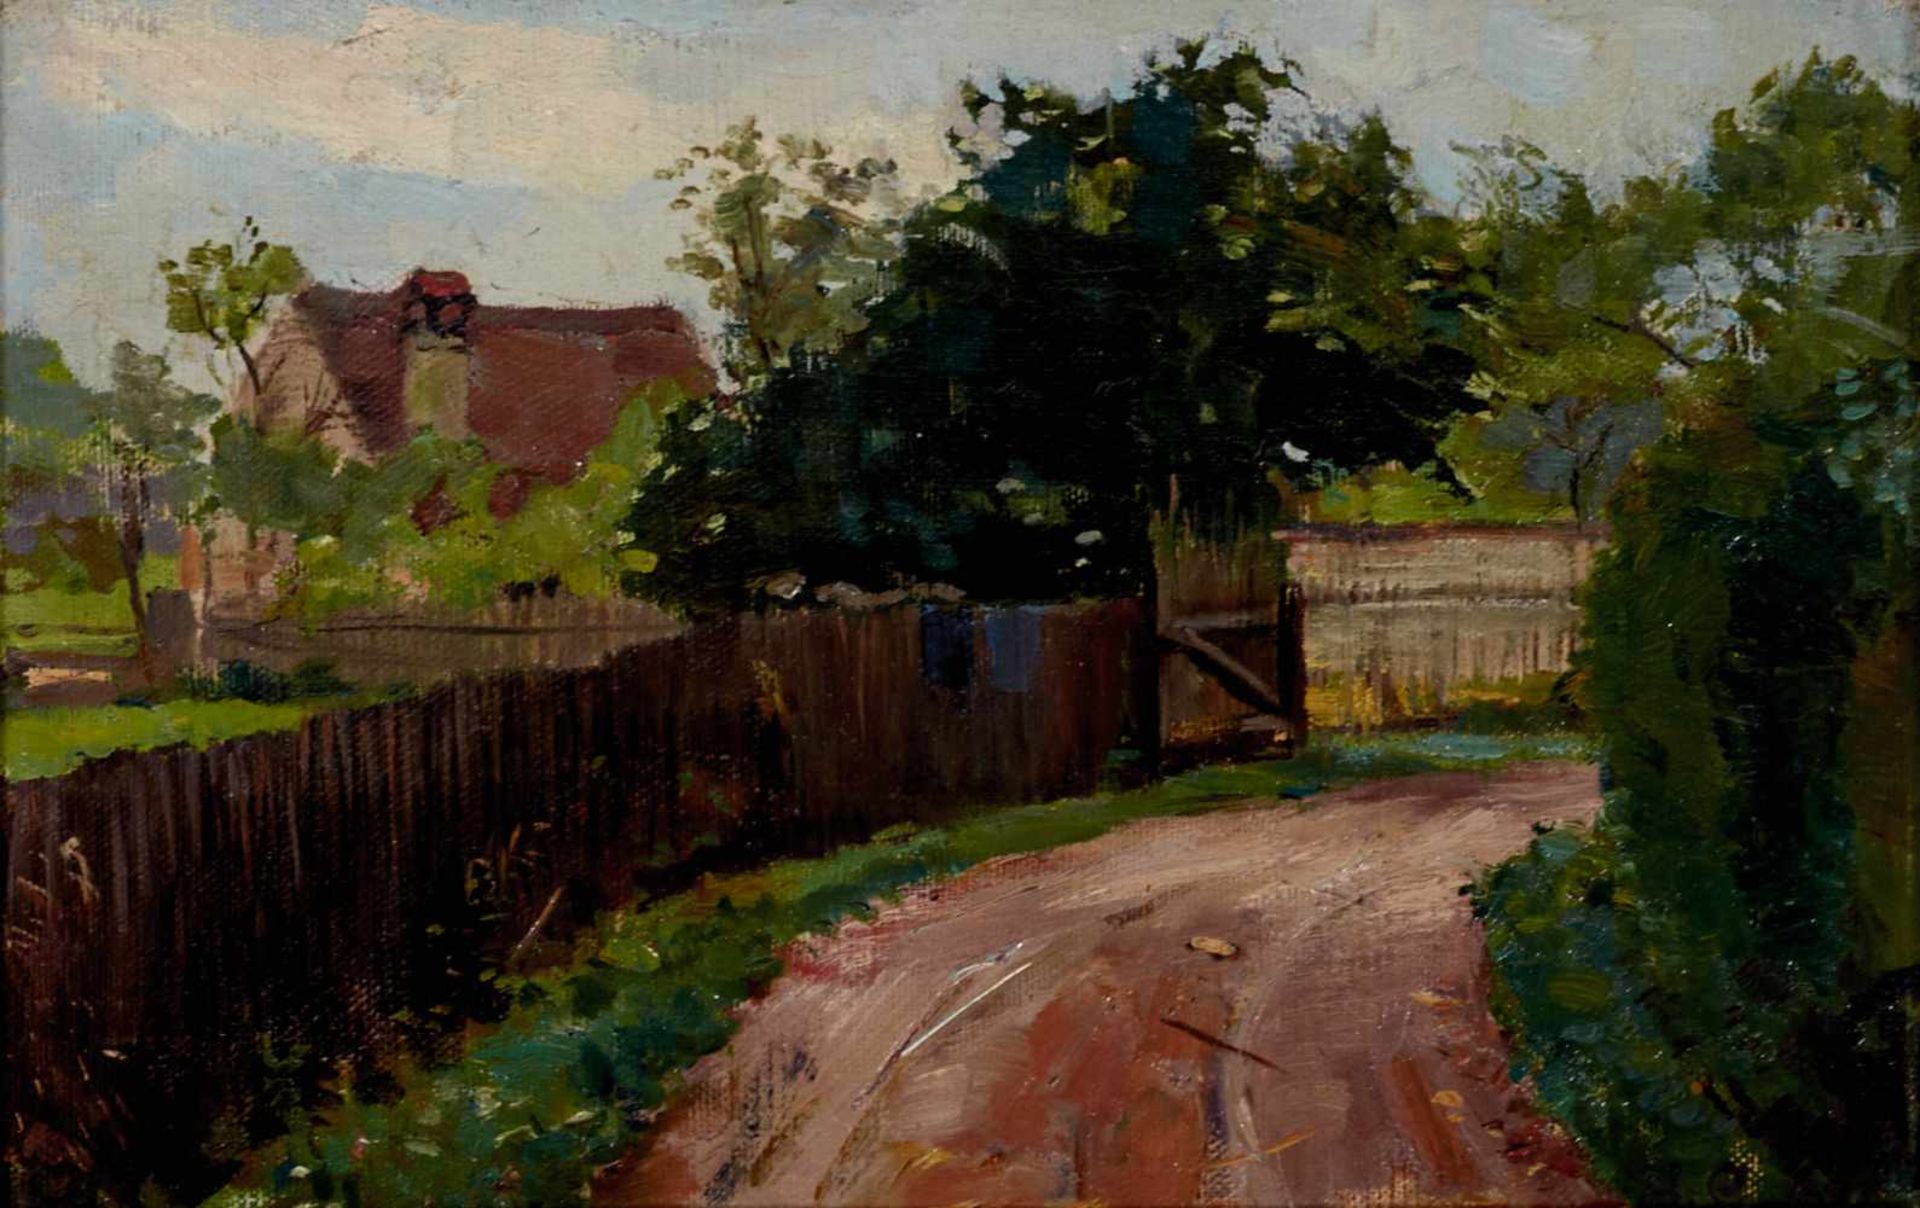 Groeber, Hermann (Wartenberg 1865-1935 Gstadt am Chiemsee),Bäuerliche Landschaft. Öl auf Leinwand.